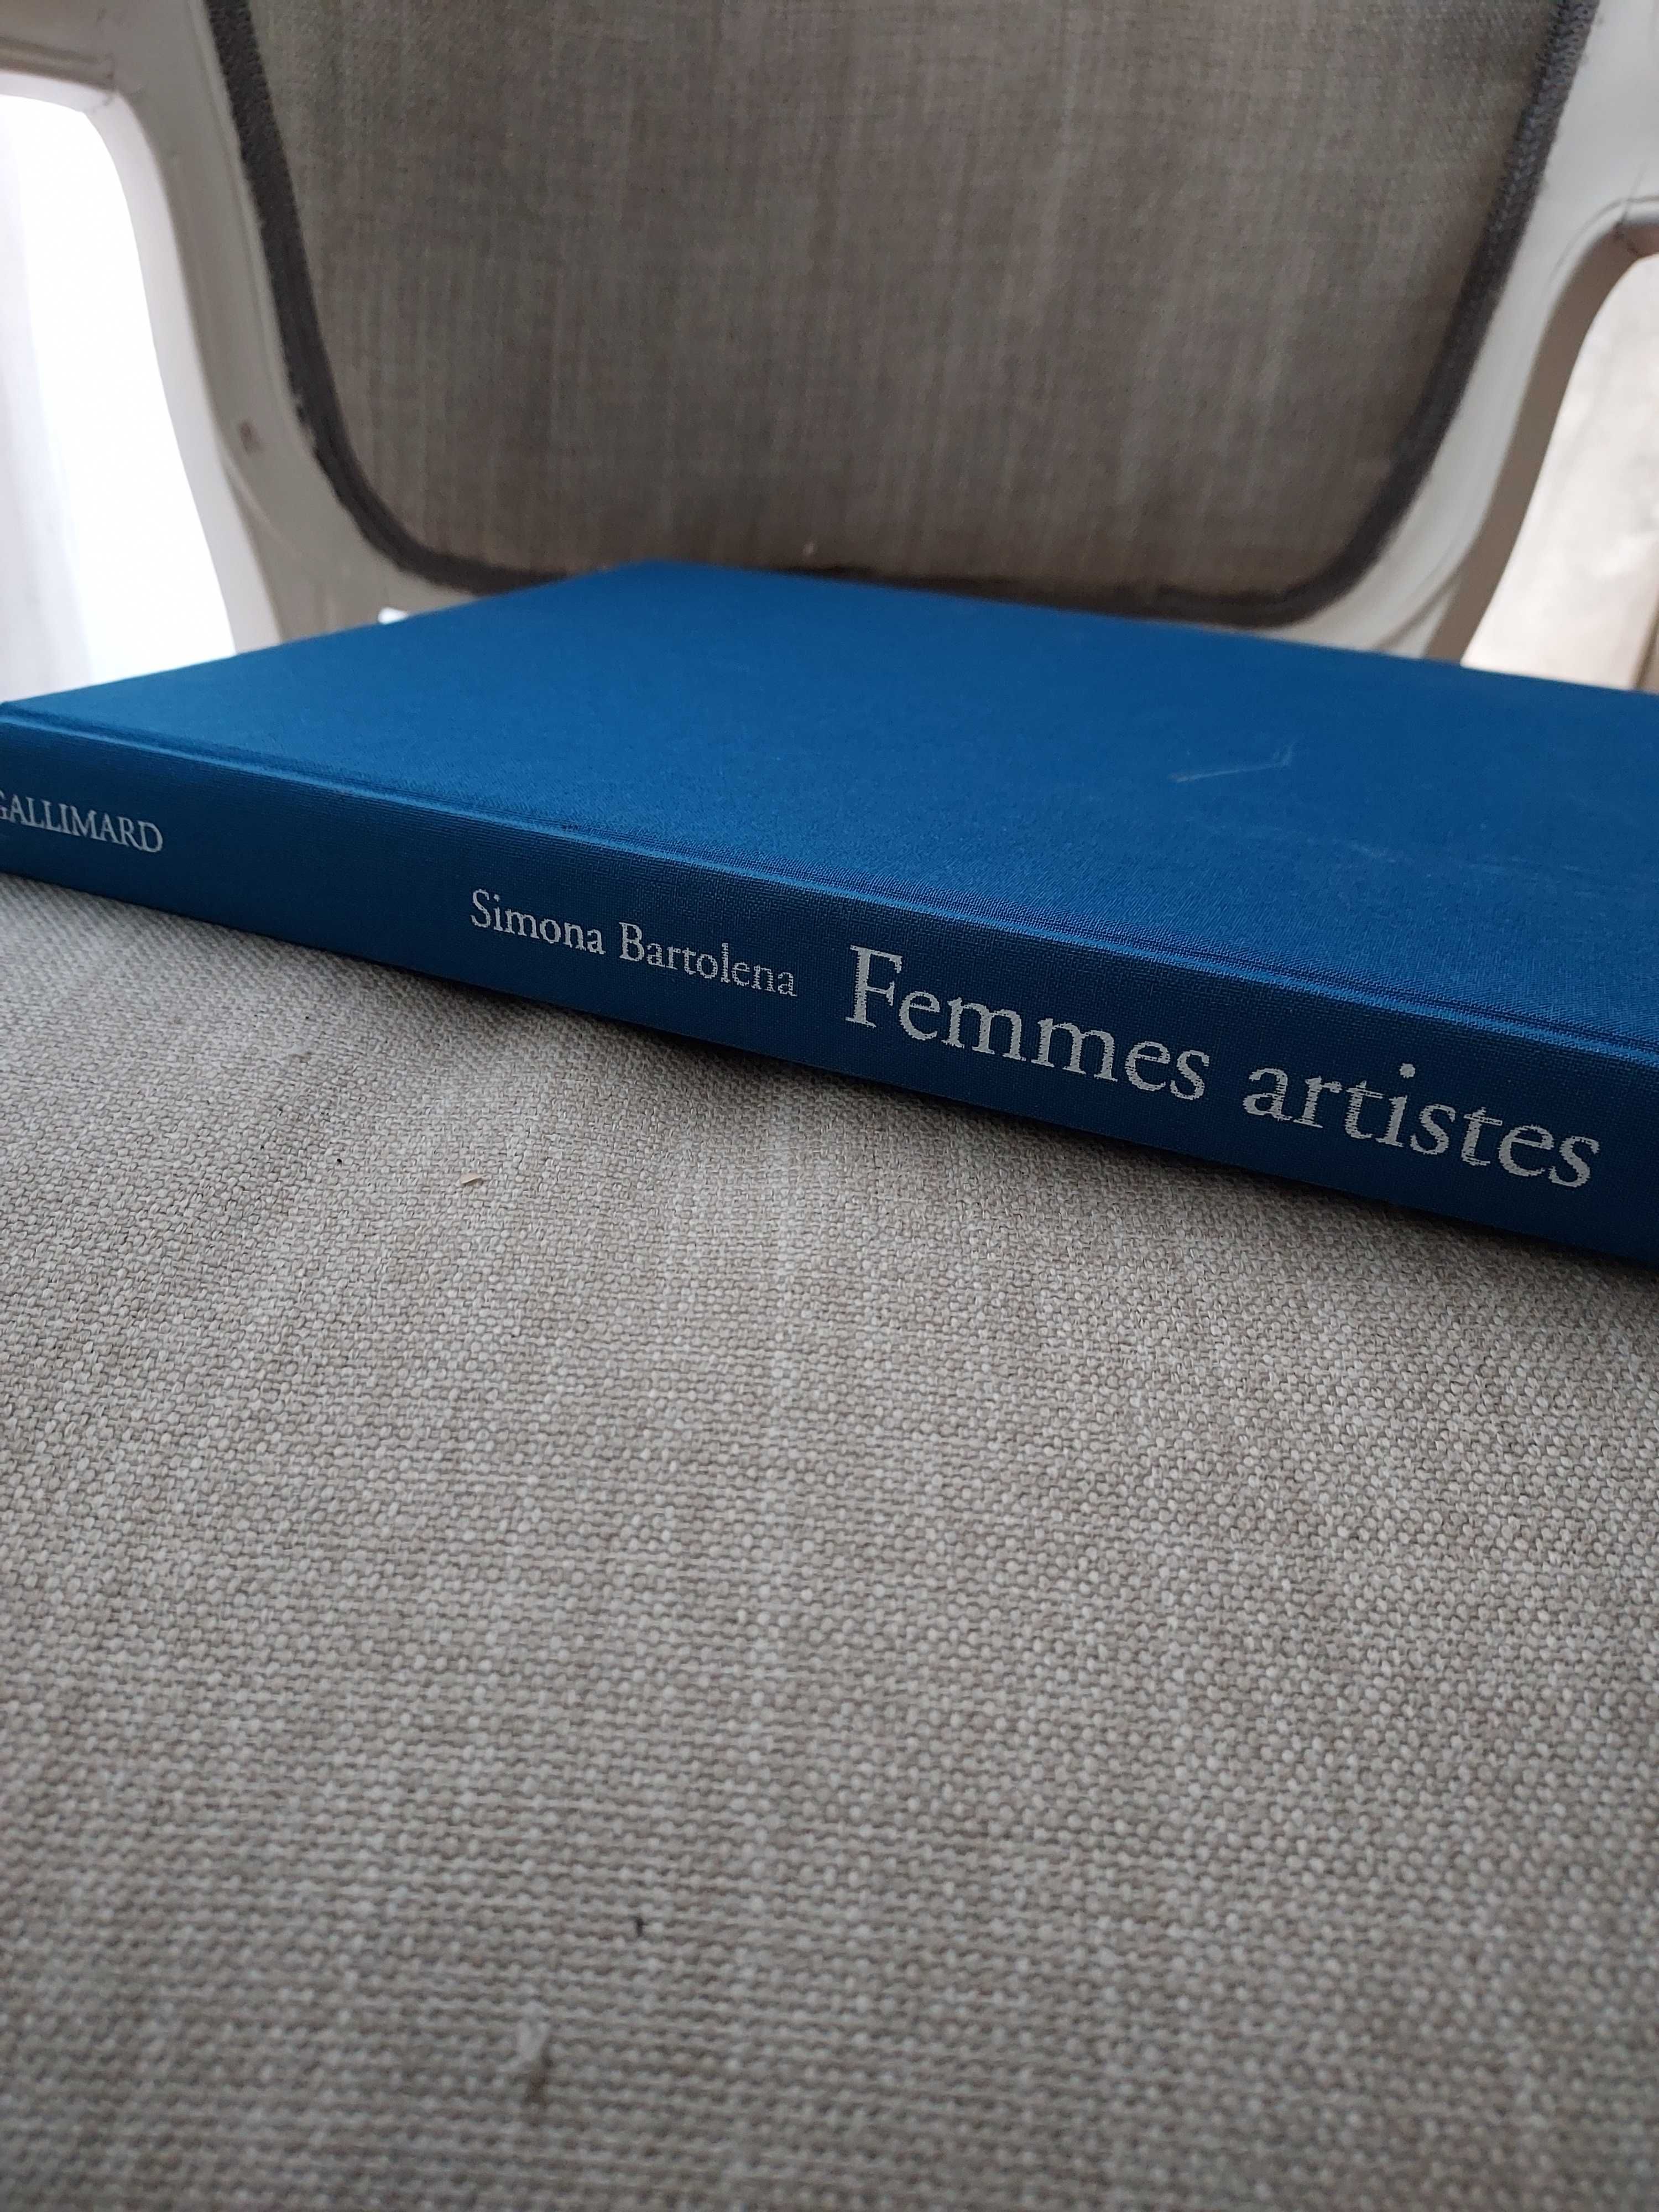 Livro Femmes artistes